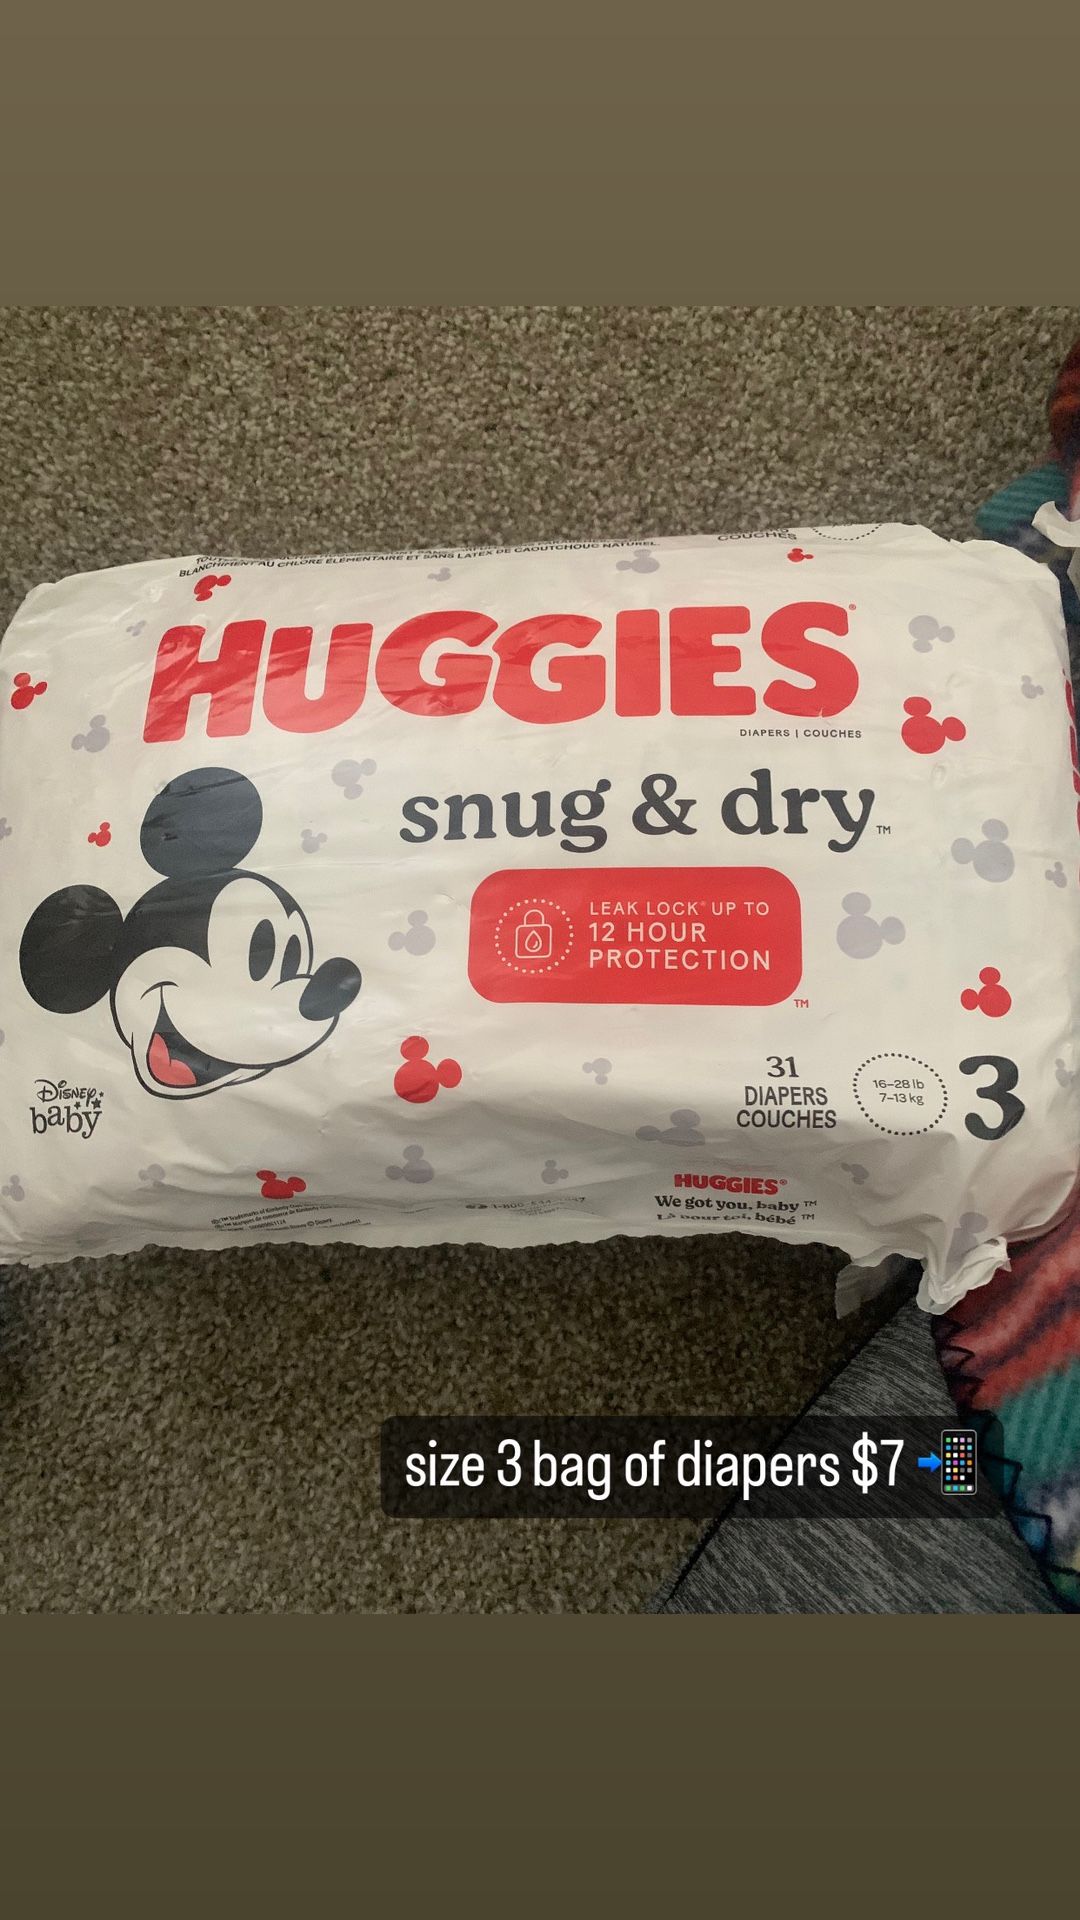 Bag of Huggies diapers size 3 